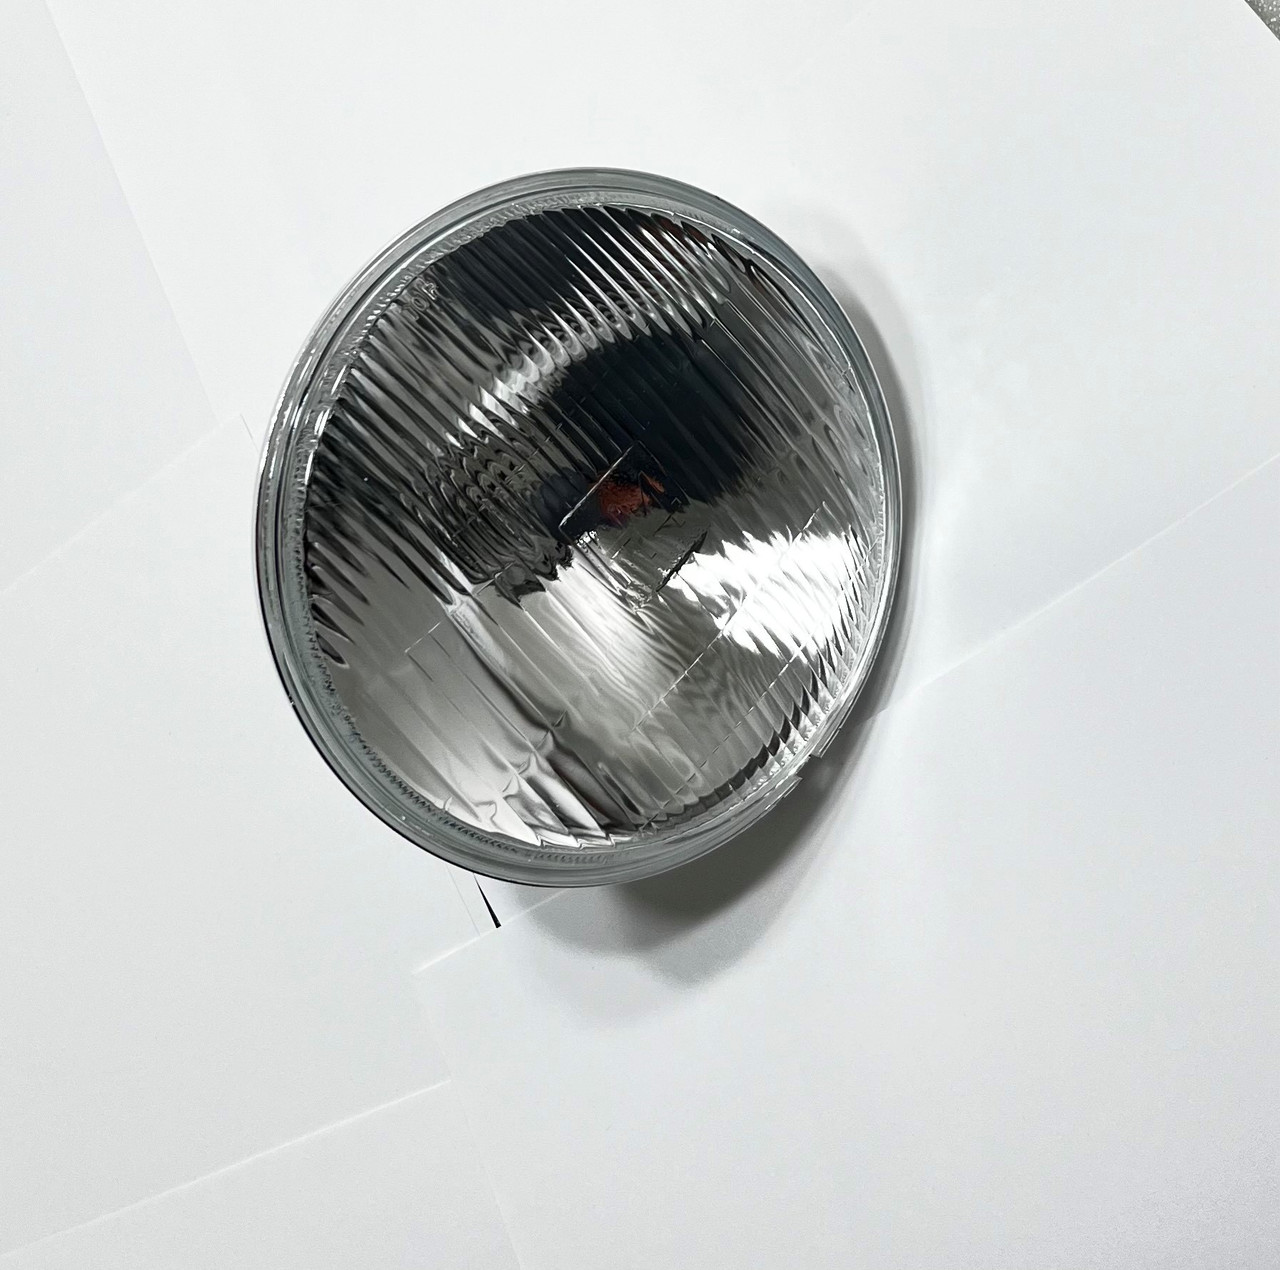 Yamaha RD R5 DS7 162mm Headlight , 66-64317, 246-84320-60-00, 1A0-84320-61-00